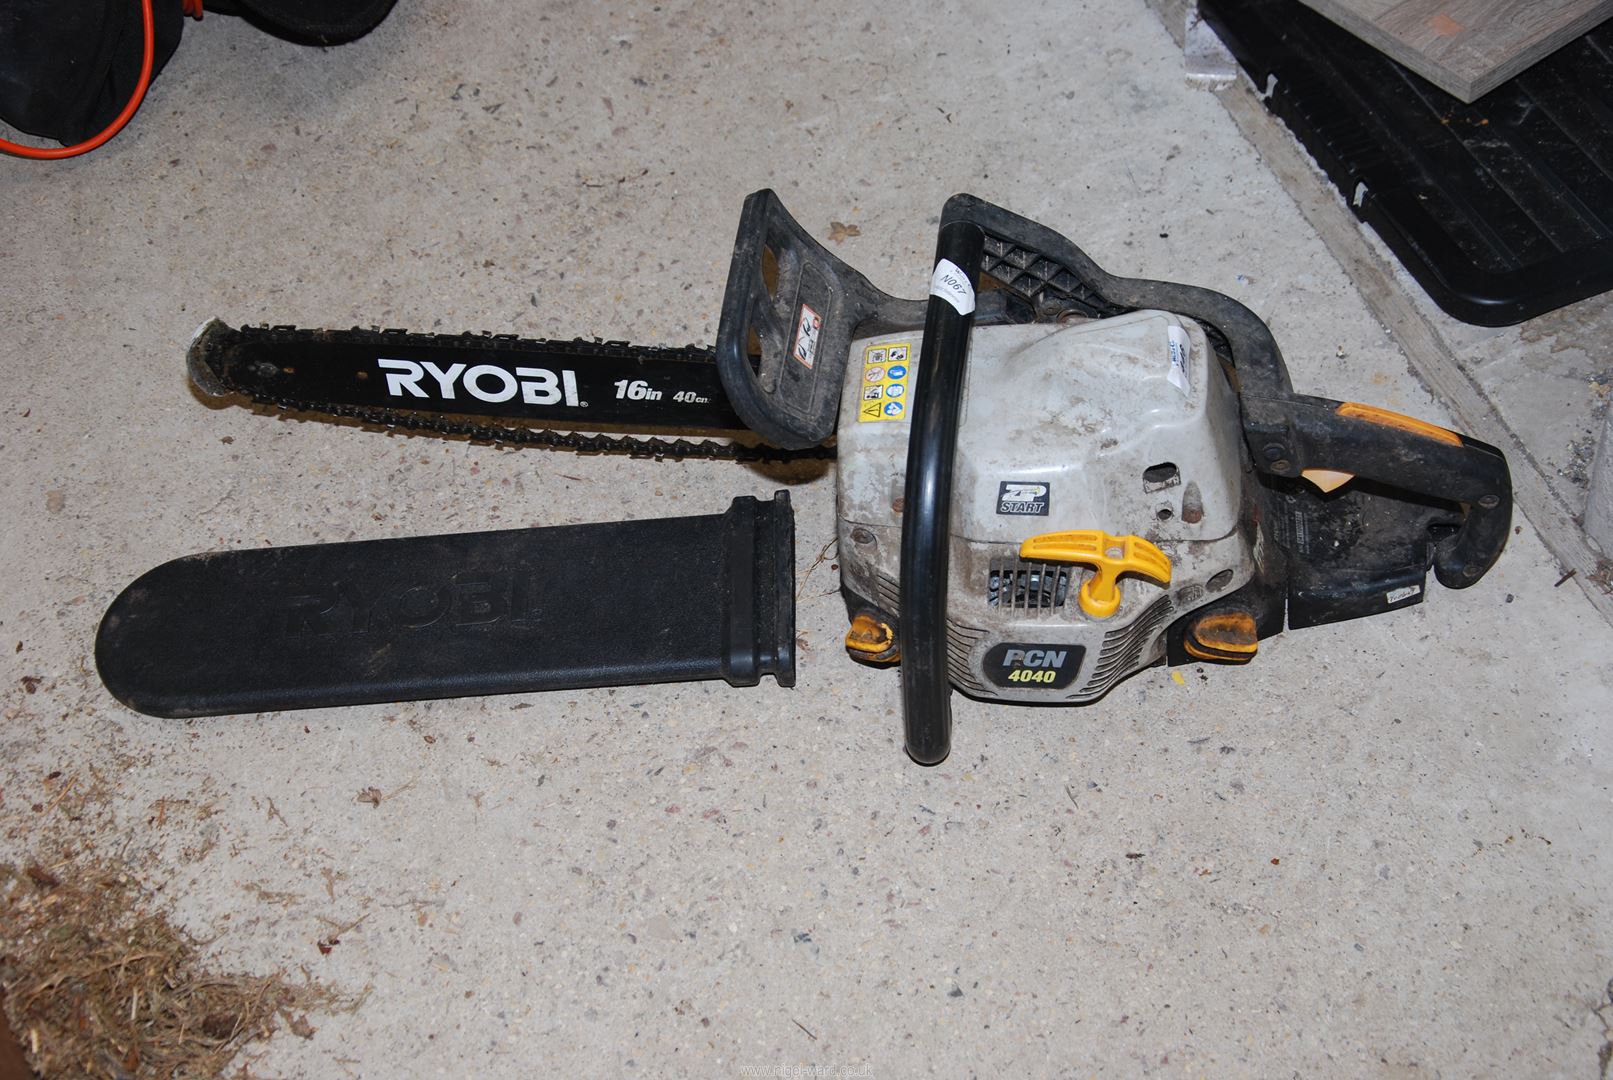 A Ryobi chainsaw, 16" cutter bar, chain brake working.